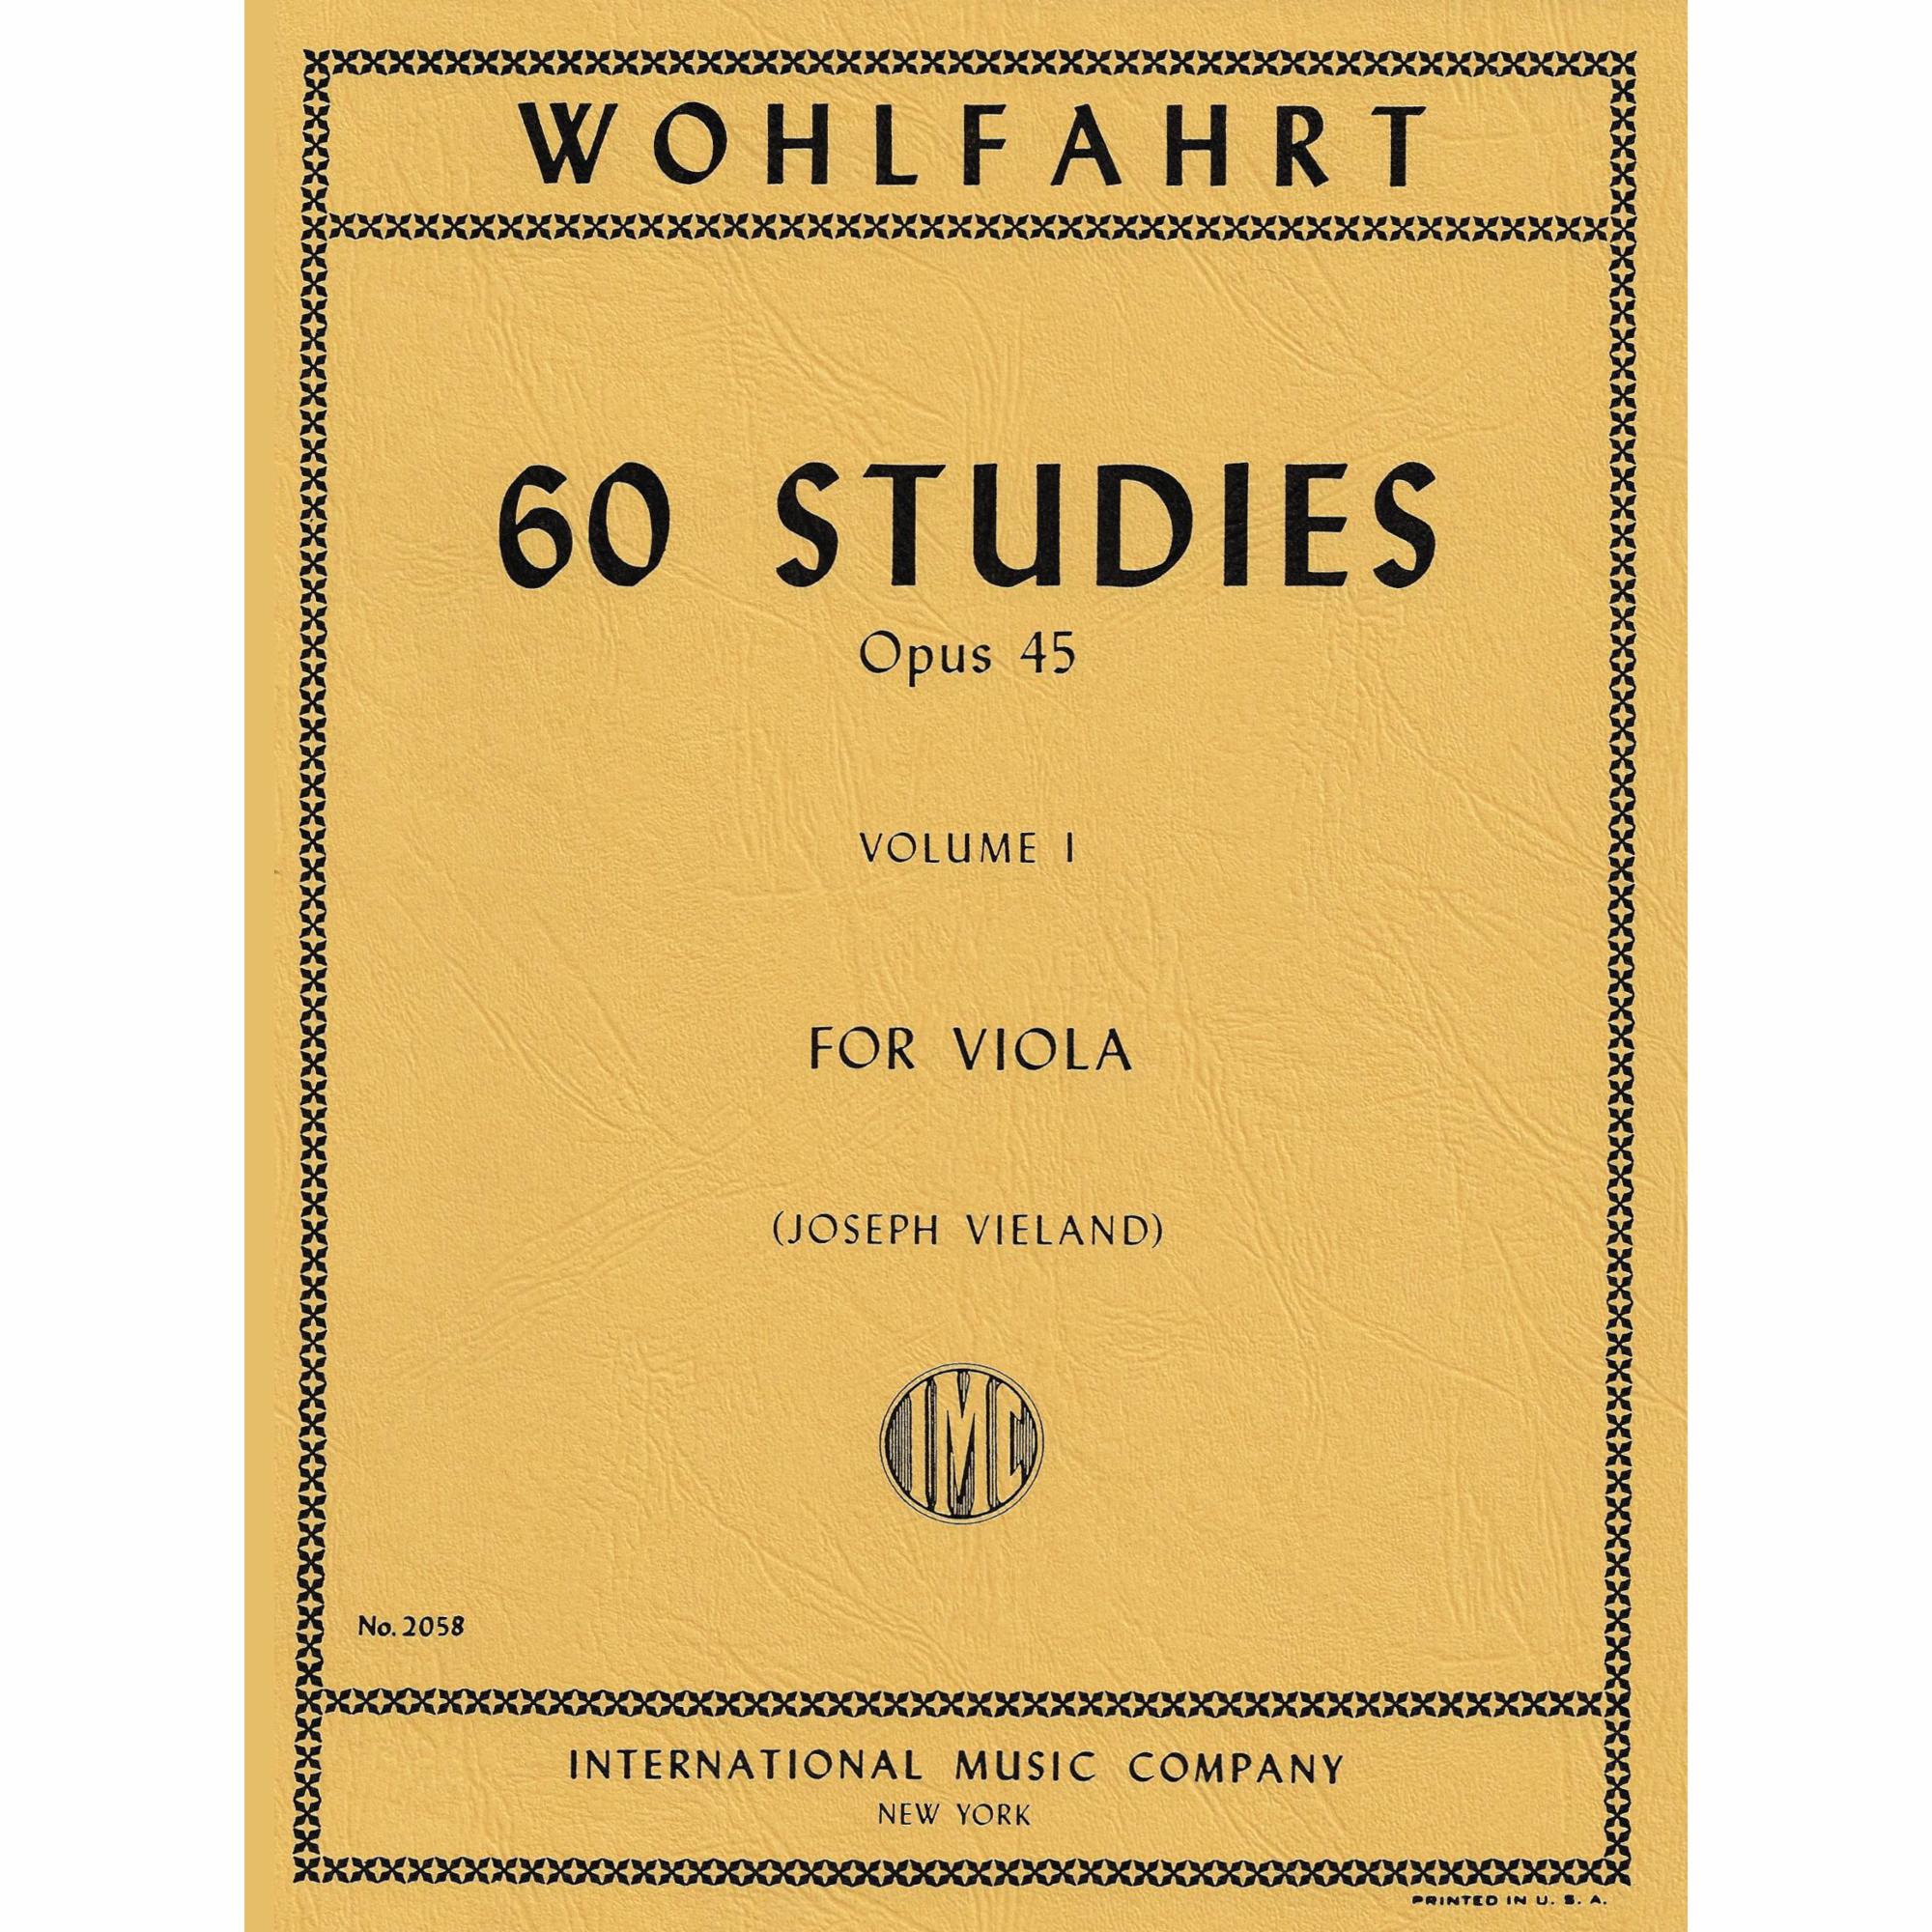 Wohlfahrt -- 60 Studies, Op. 45, Vols. I-II for Viola